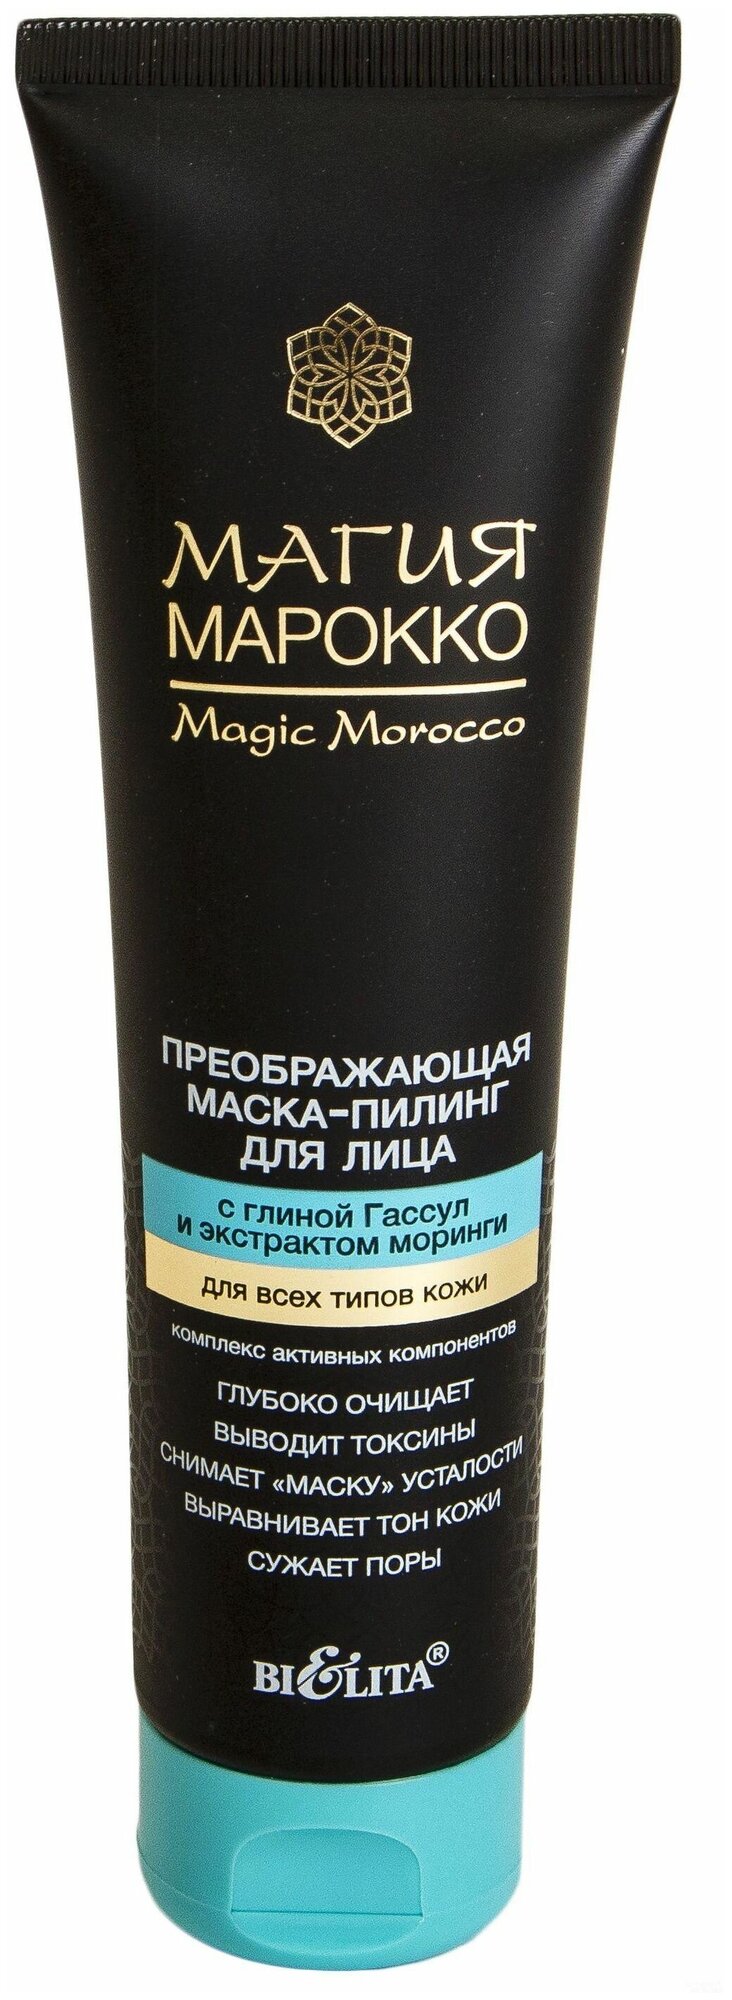 Преображающая Маска-пилинг для лица магия марокко с глиной Гассул и экстрактом моринги 100 мл